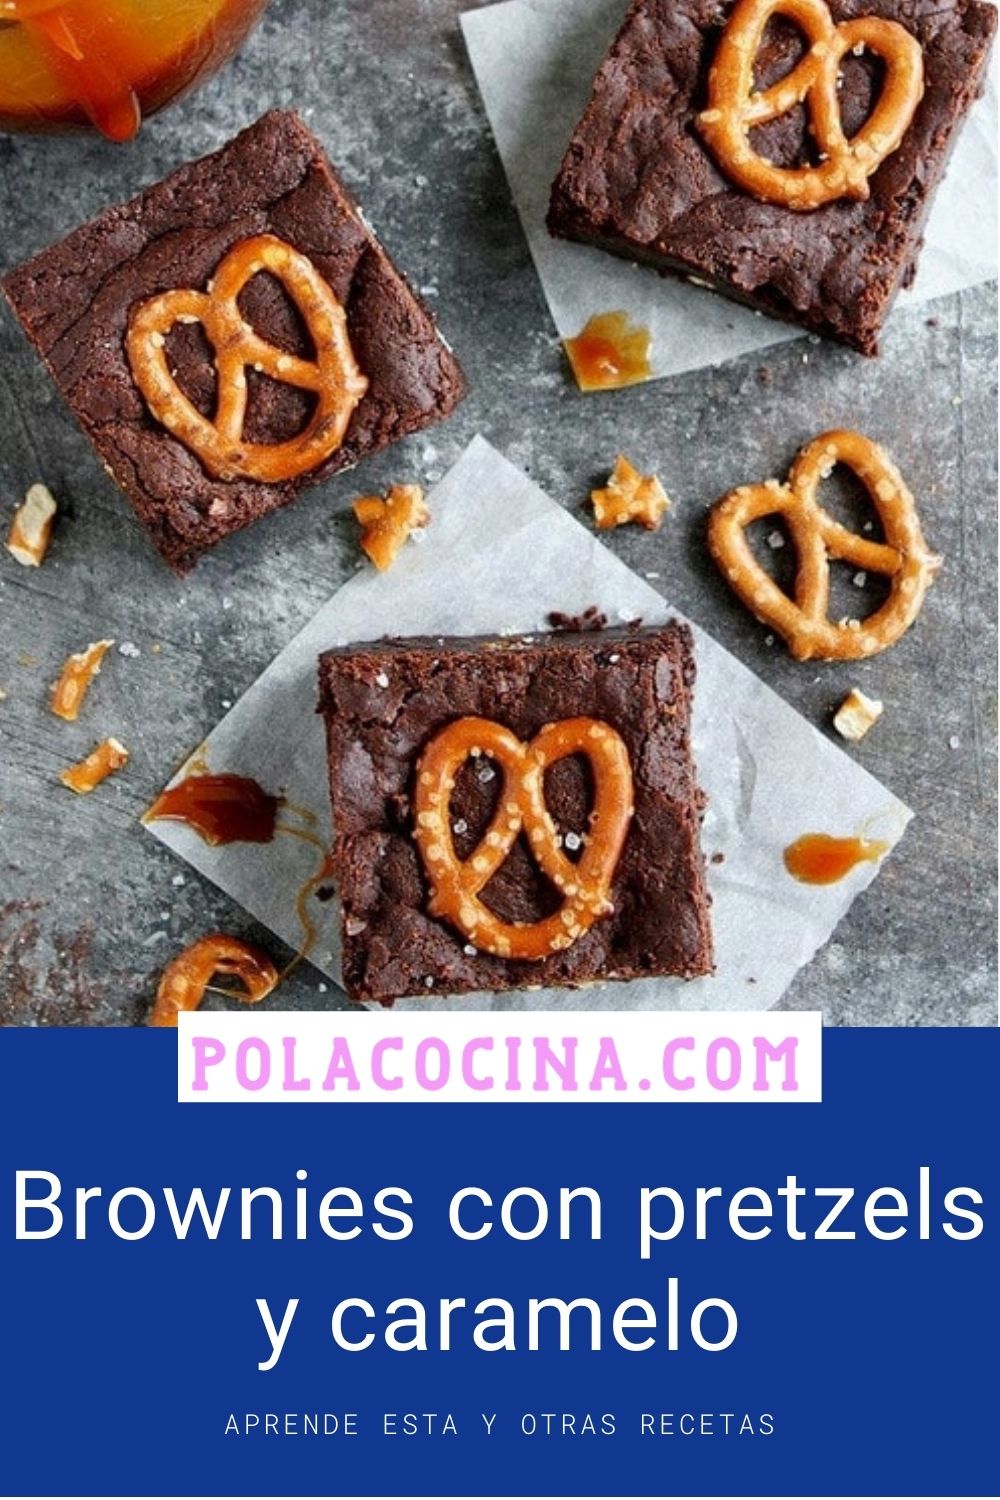 receta de brownies con pretzels y caramelo salado